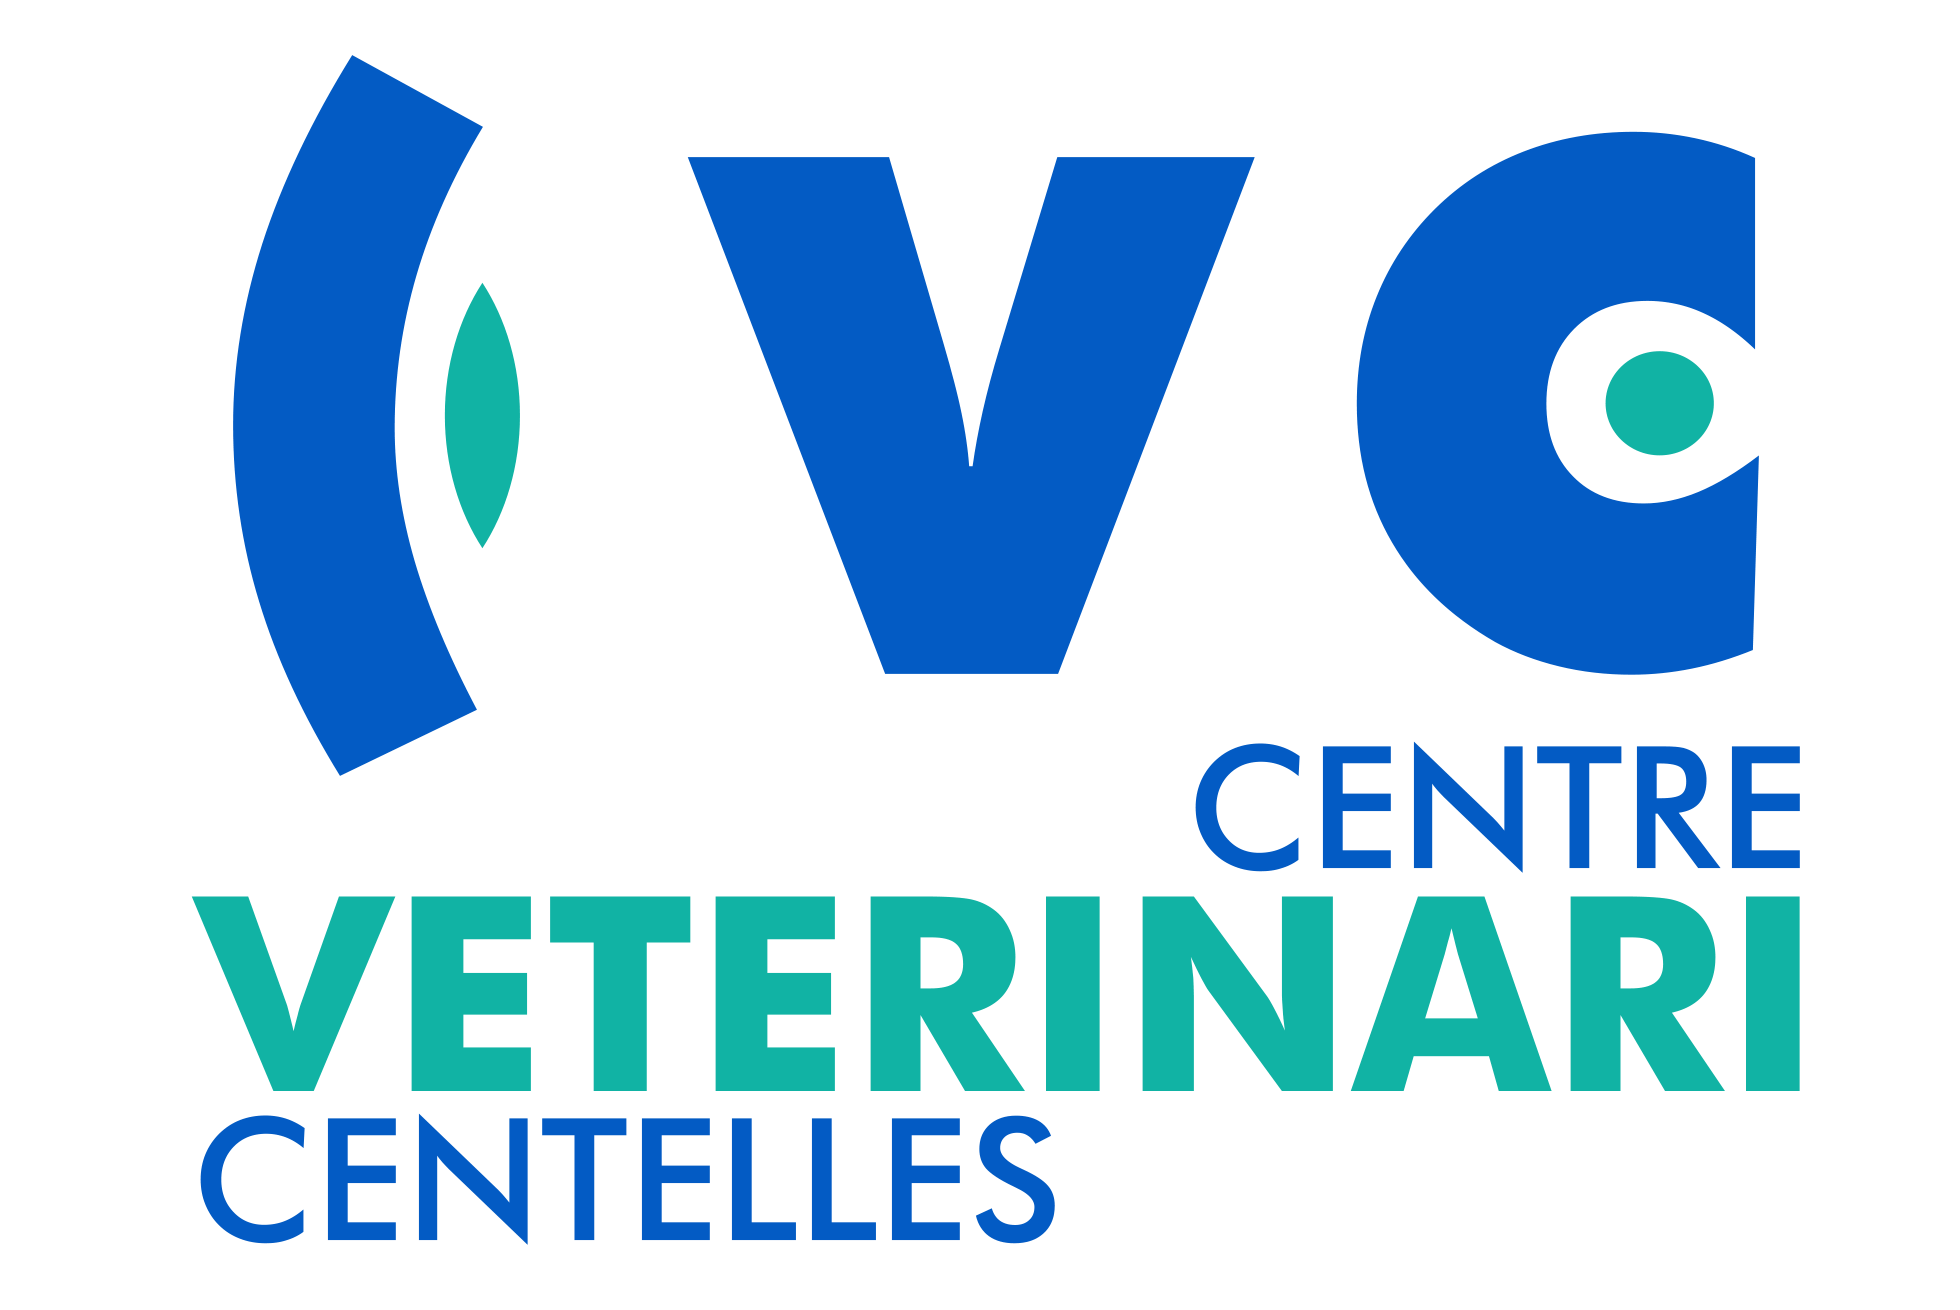 Centre Veterinari Centelles